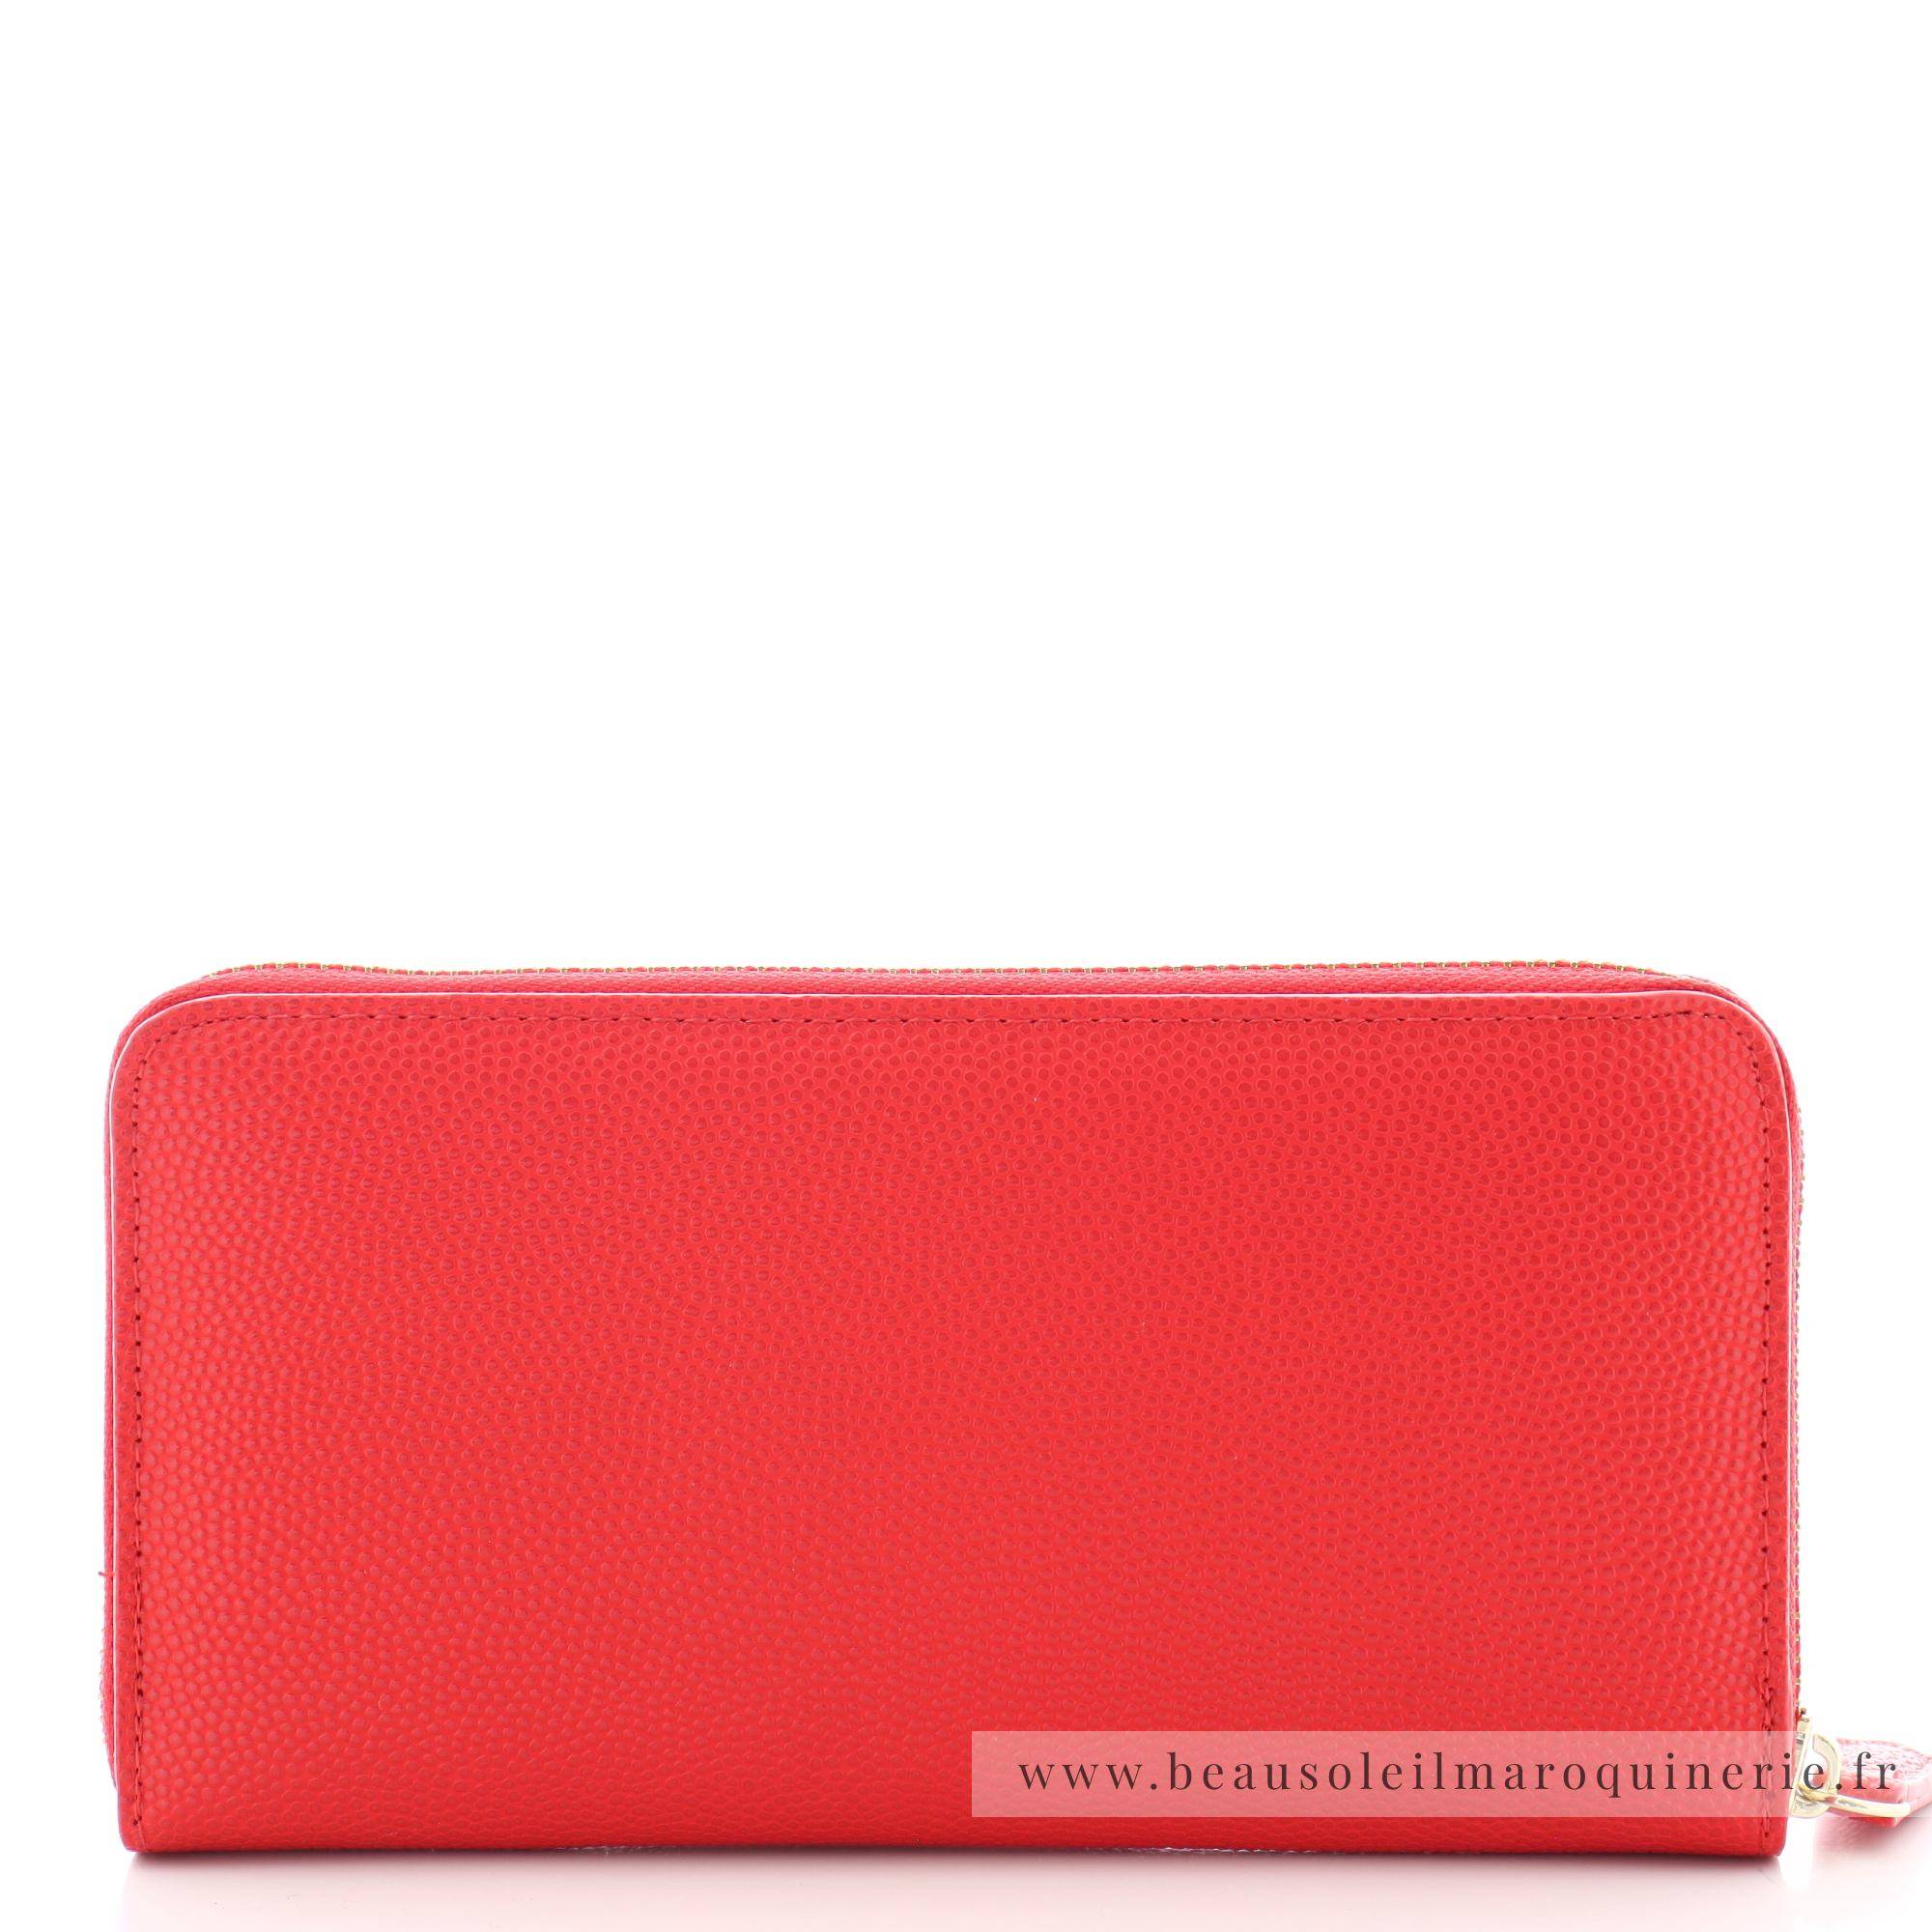 Grand portefeuille zippé Valentino Bags Divina VPS1R4155G 003 couleur rouge foncé vue de dos